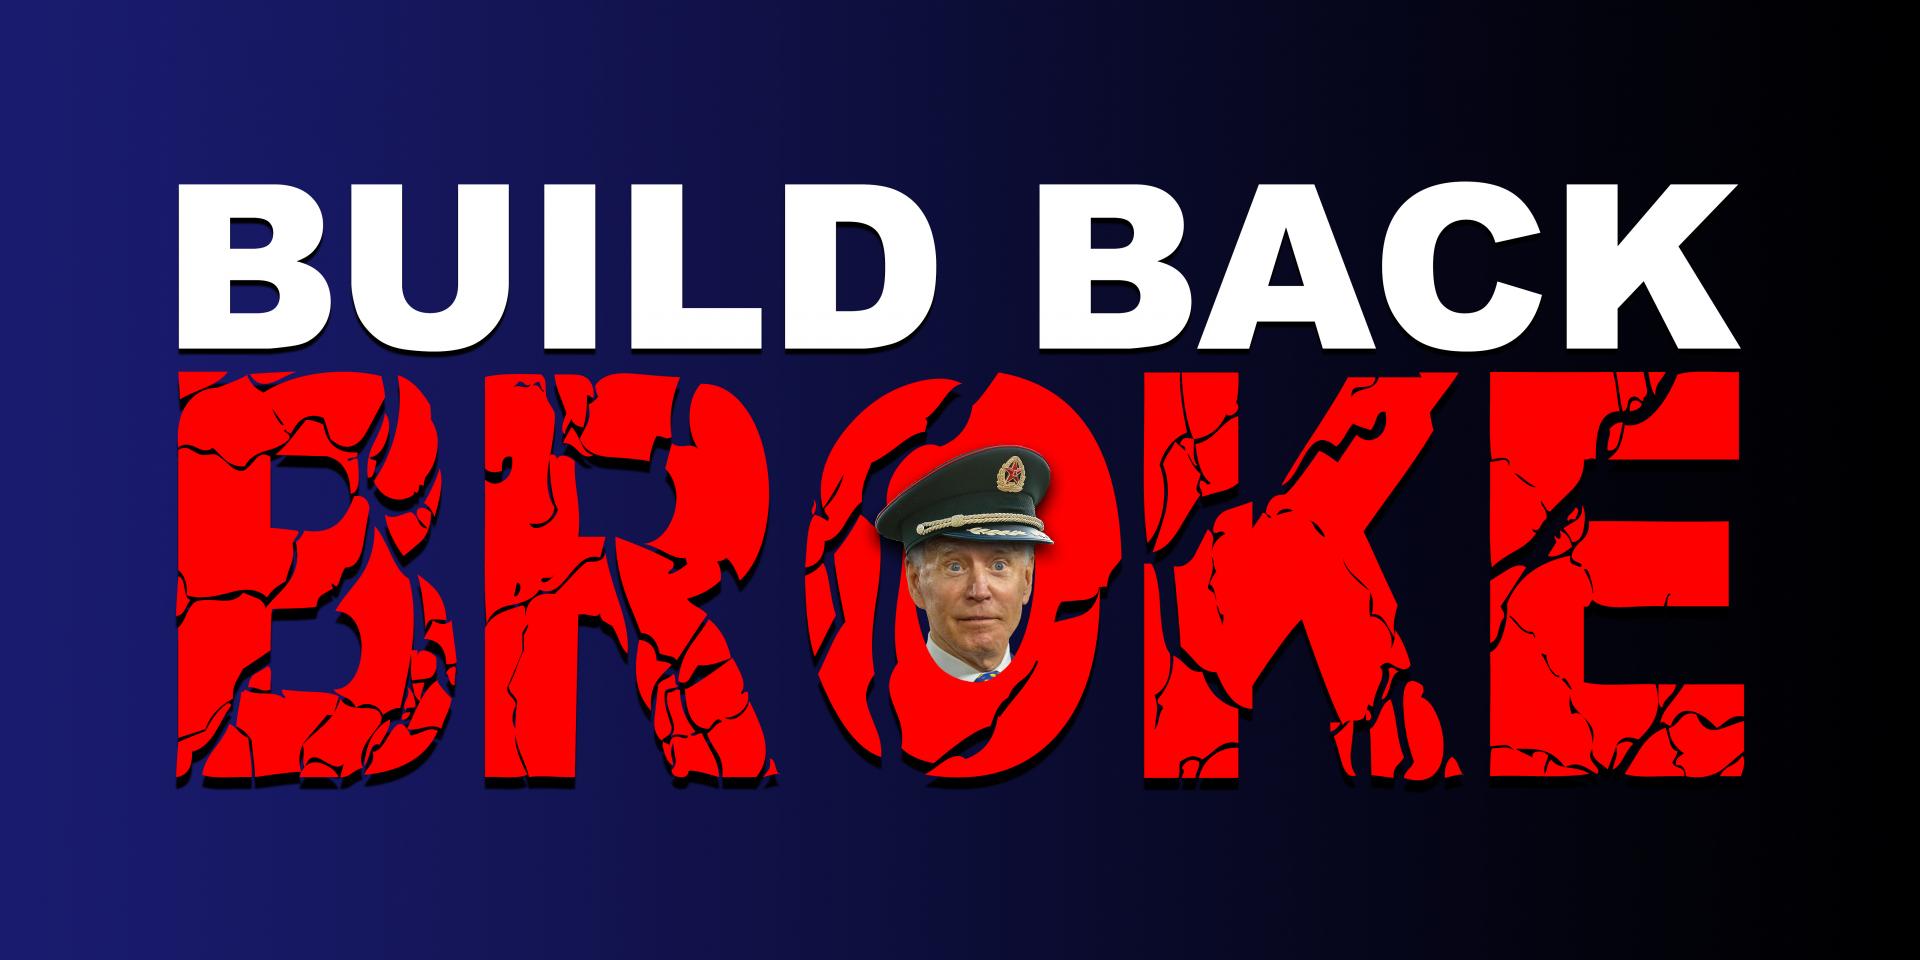 BUILD BACK BROKE meme - 2